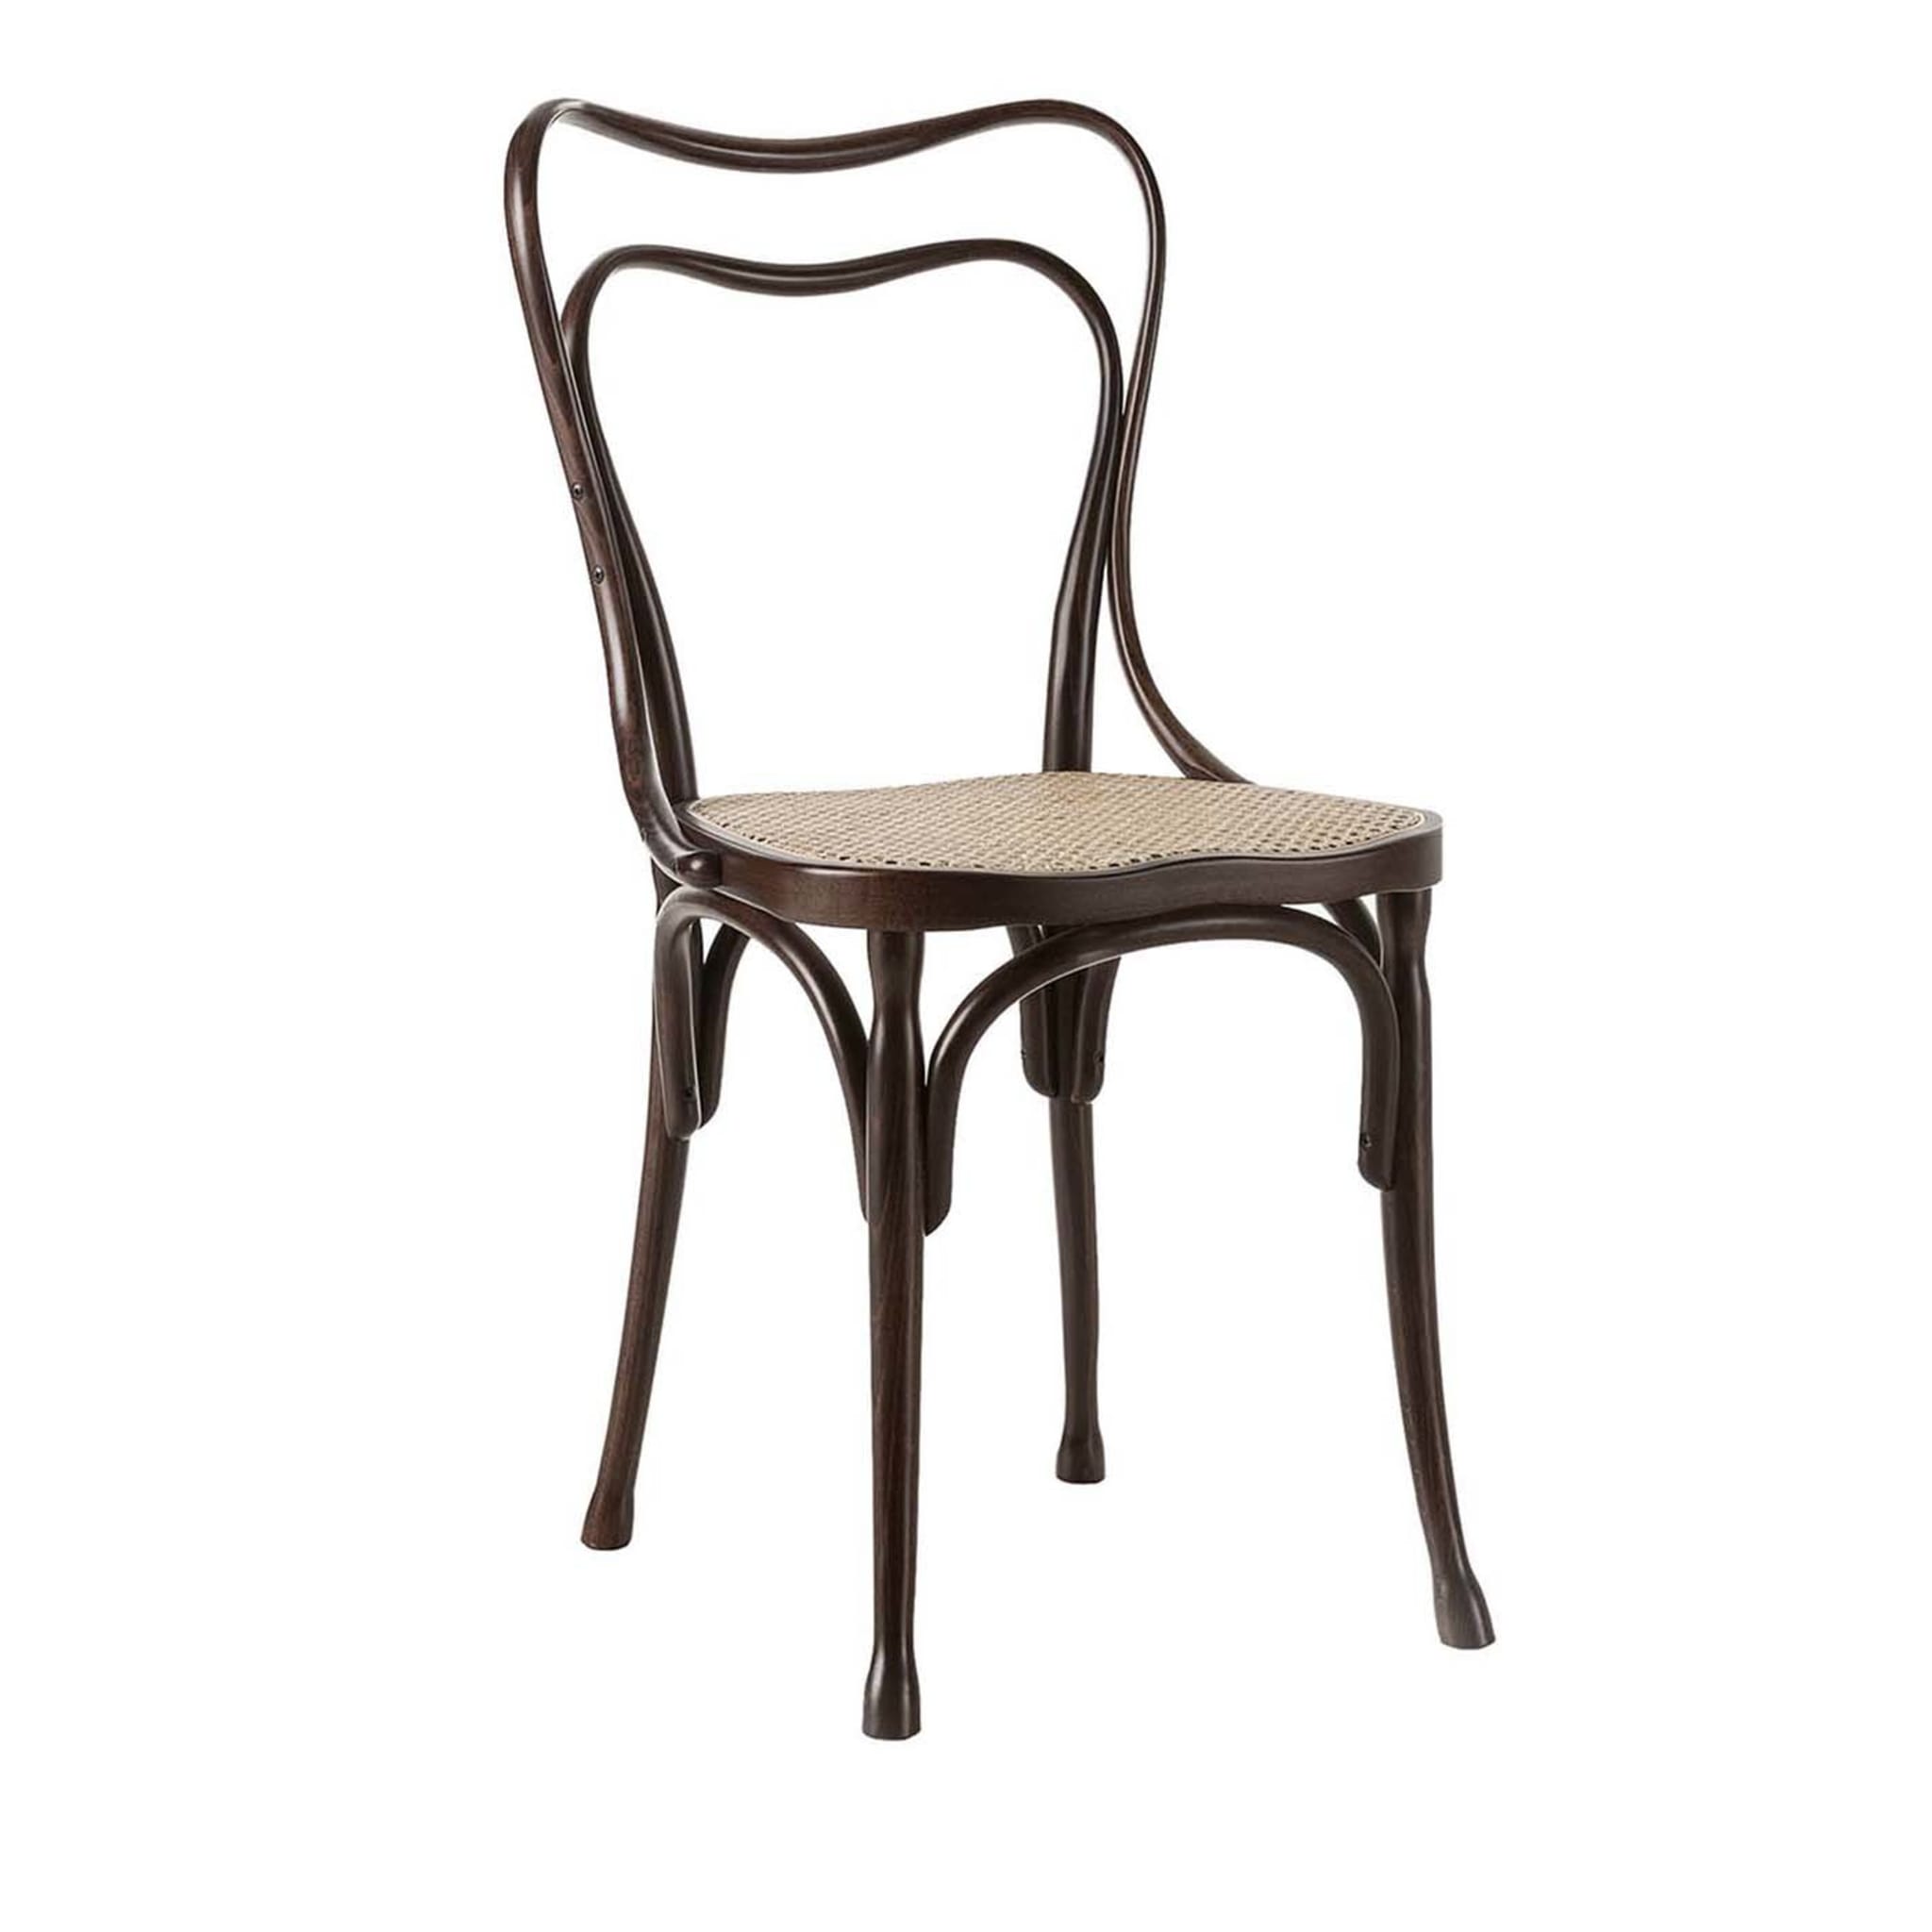 Loos Café Museum Brauner Stuhl von Adolf Loos - Hauptansicht